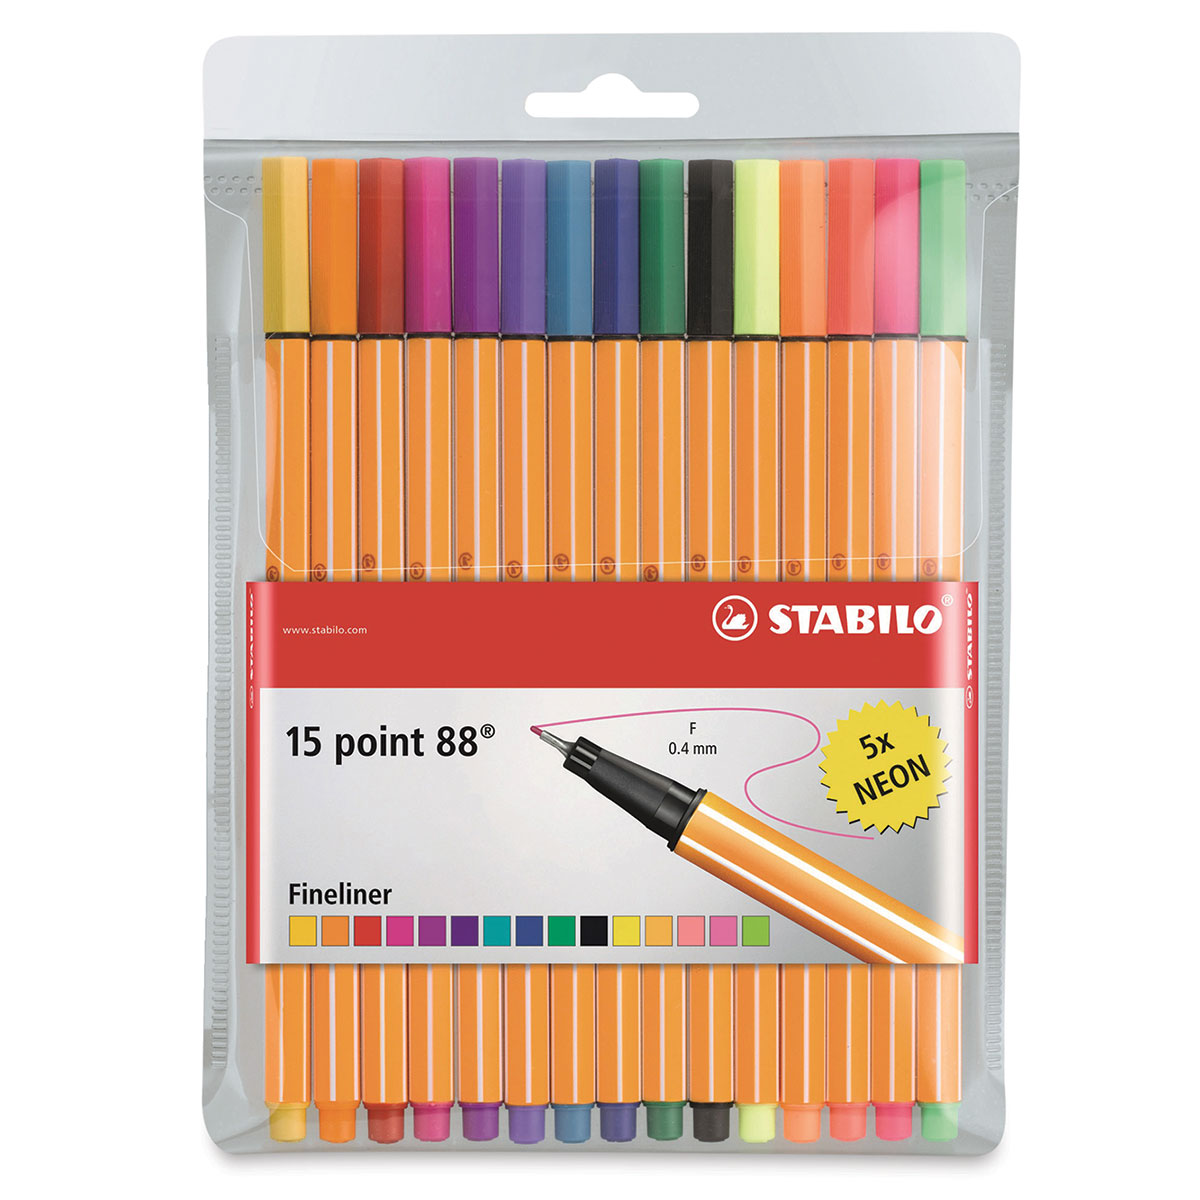 Aanpassen pols metro Stabilo Point 88 Fineliner Pen Set - Assorted Colors, Wallet, Set of 15|  Utrecht Art Supplies